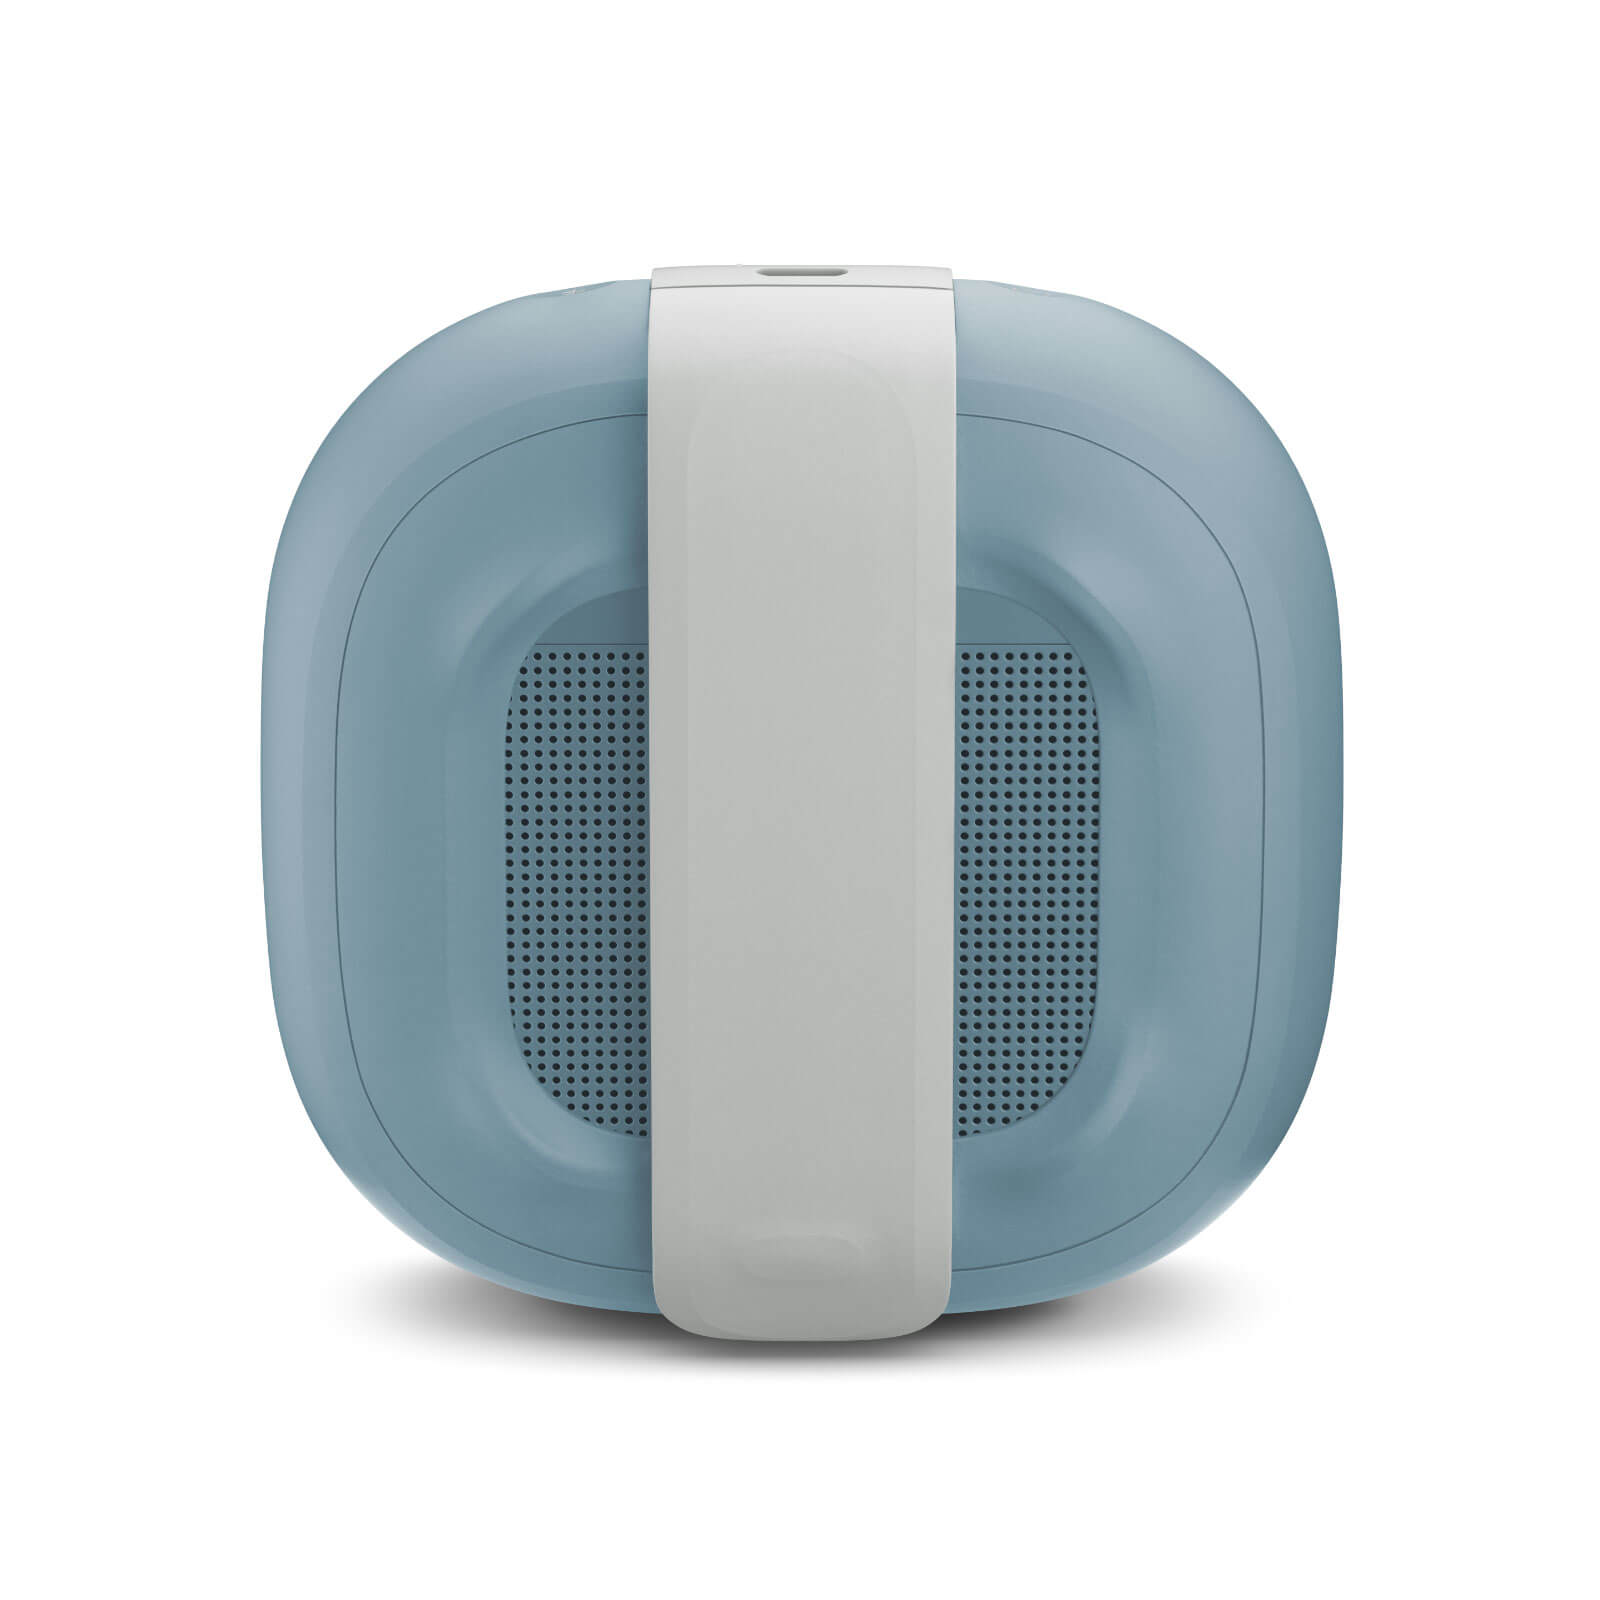 Bose SoundLink Micro Bluetooth en nuevos colores. Variedad para el mejor audio portátil